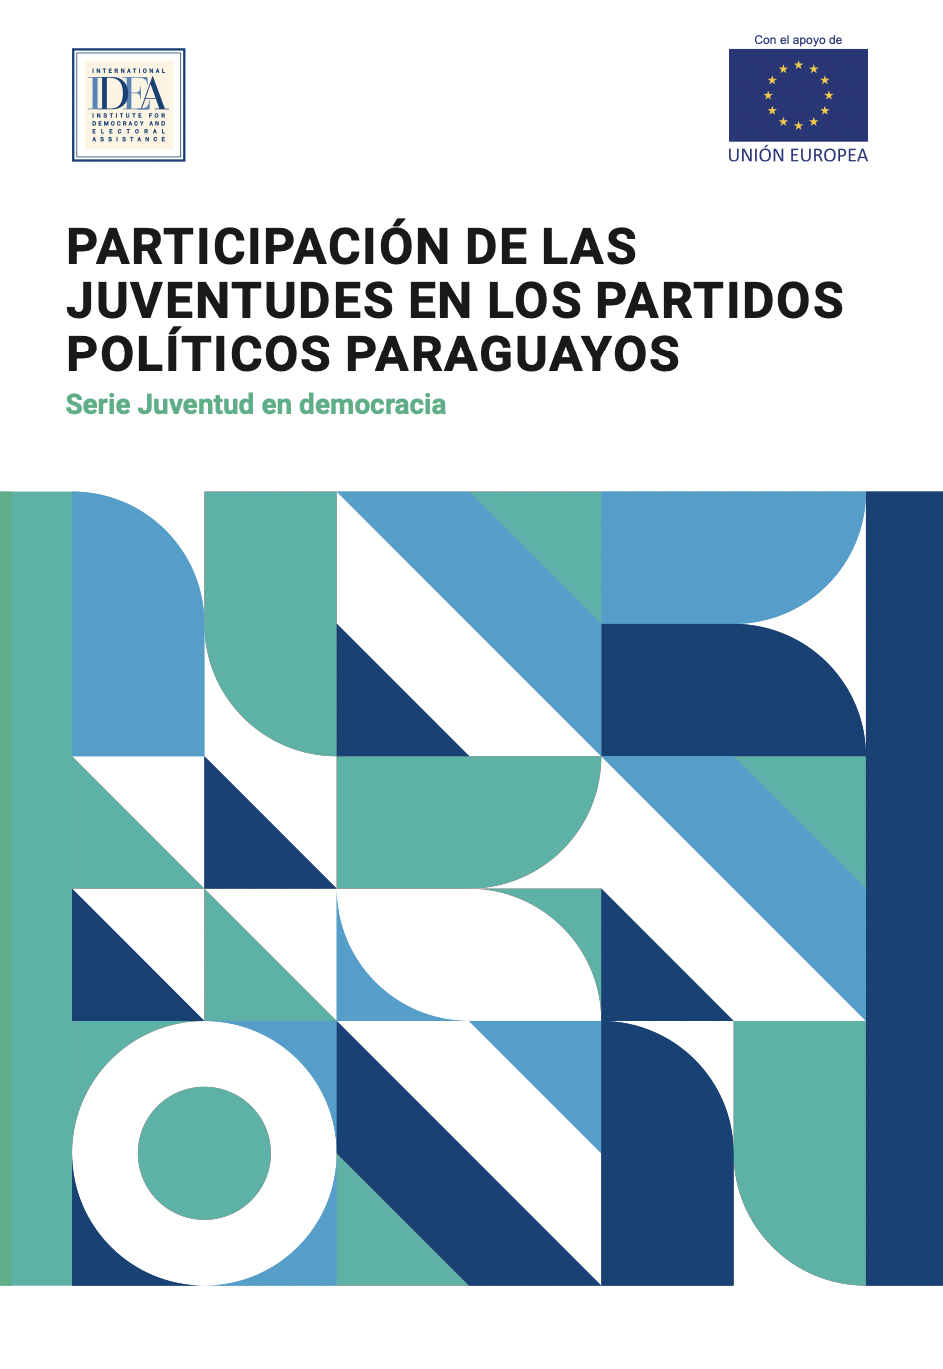 PARTICIPACIÓN DE LAS JUVENTUDES EN LOS PARTIDOS POLÍTICOS PARAGUAYOS